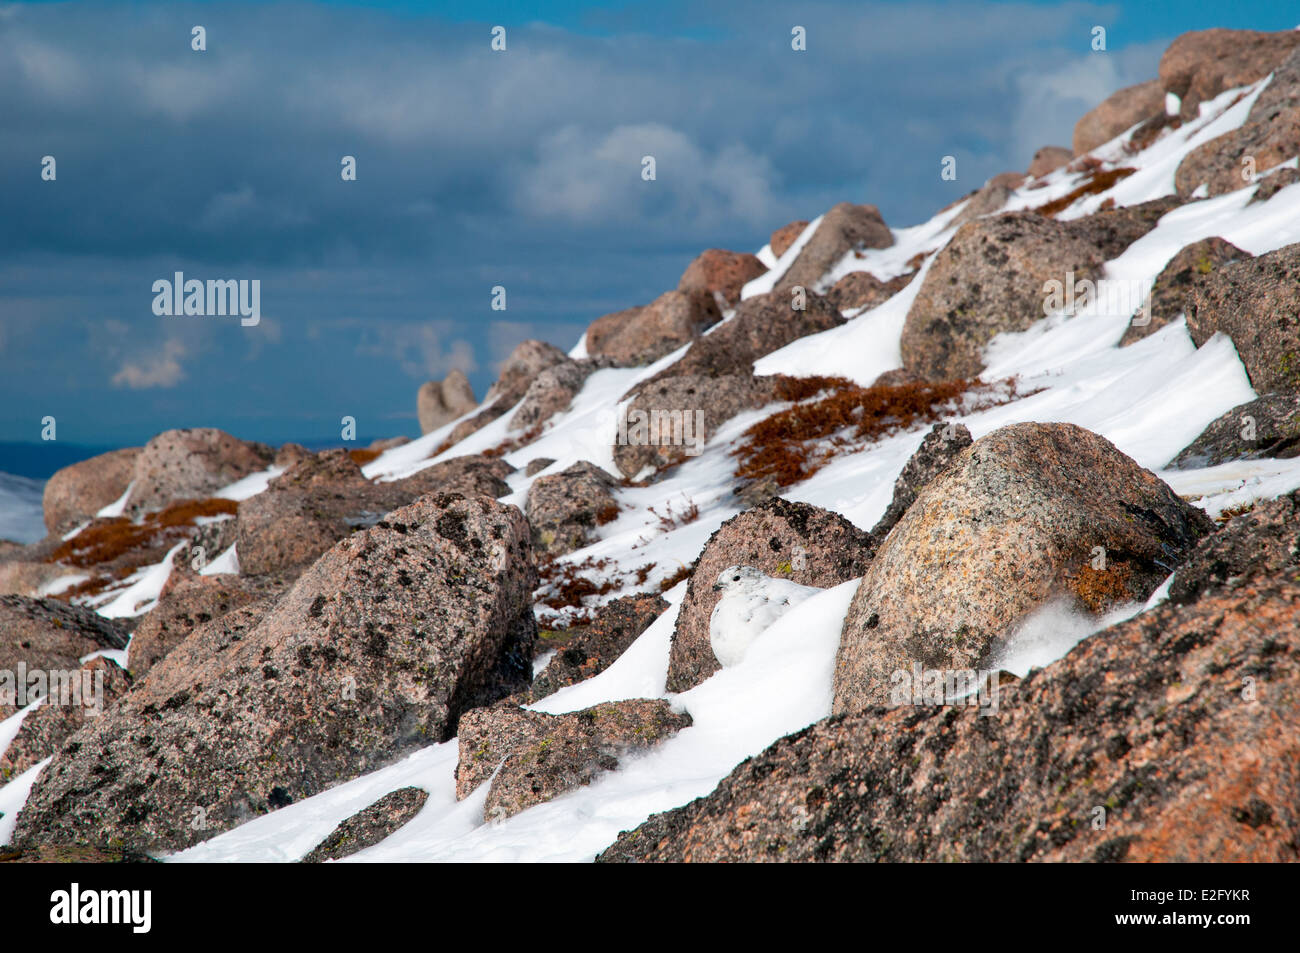 Le lagopède alpin (Lagopus mutus) femelle adulte en plumage d'hiver, se cachant dans un champ de rochers,haute sur les pentes du Cairn Gorm Banque D'Images